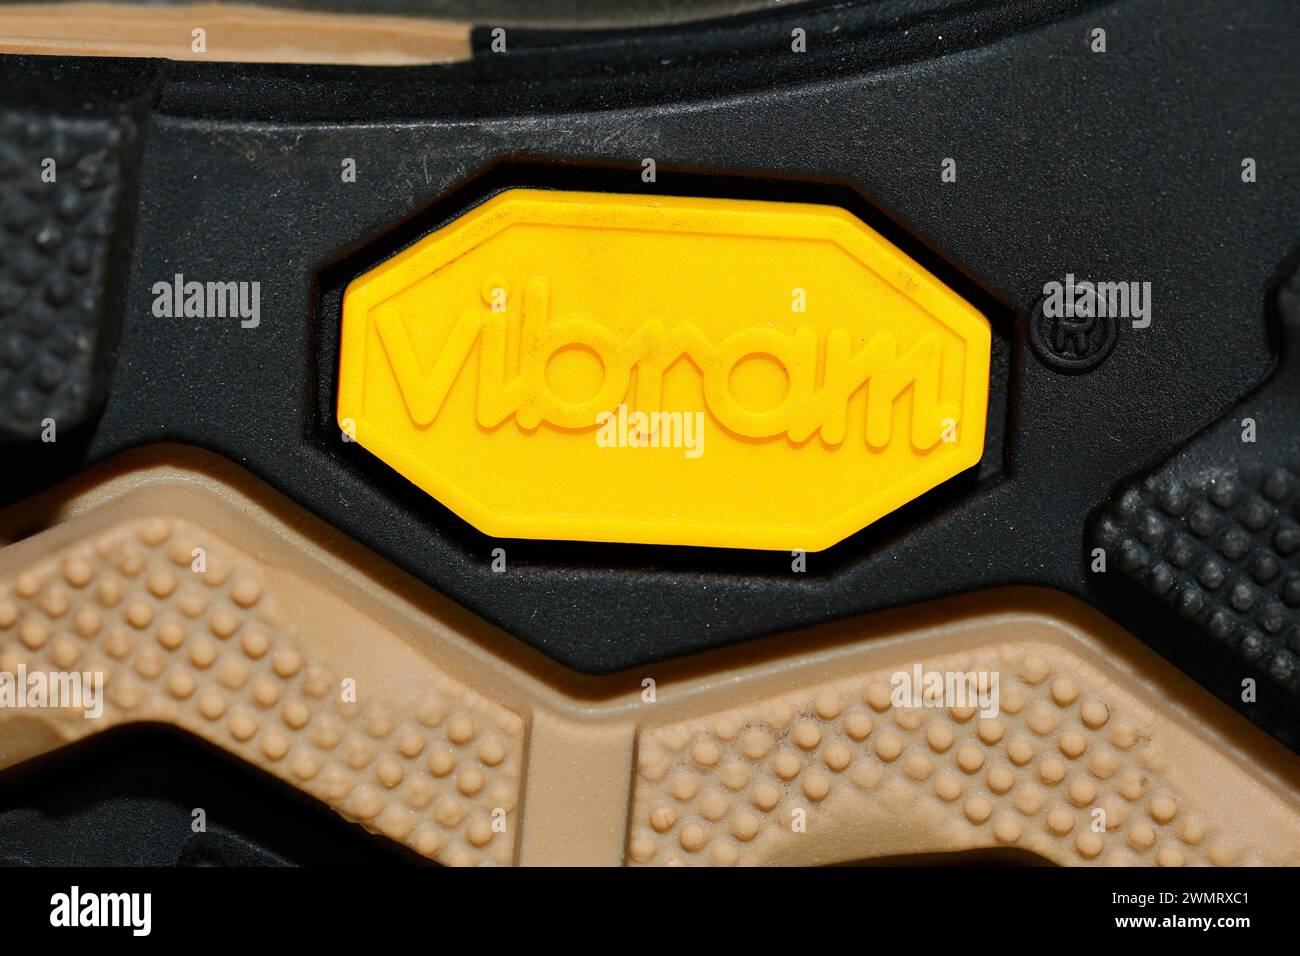 Une semelle en caoutchouc de marque Vibram sur la semelle extérieure d'une chaussure. Banque D'Images